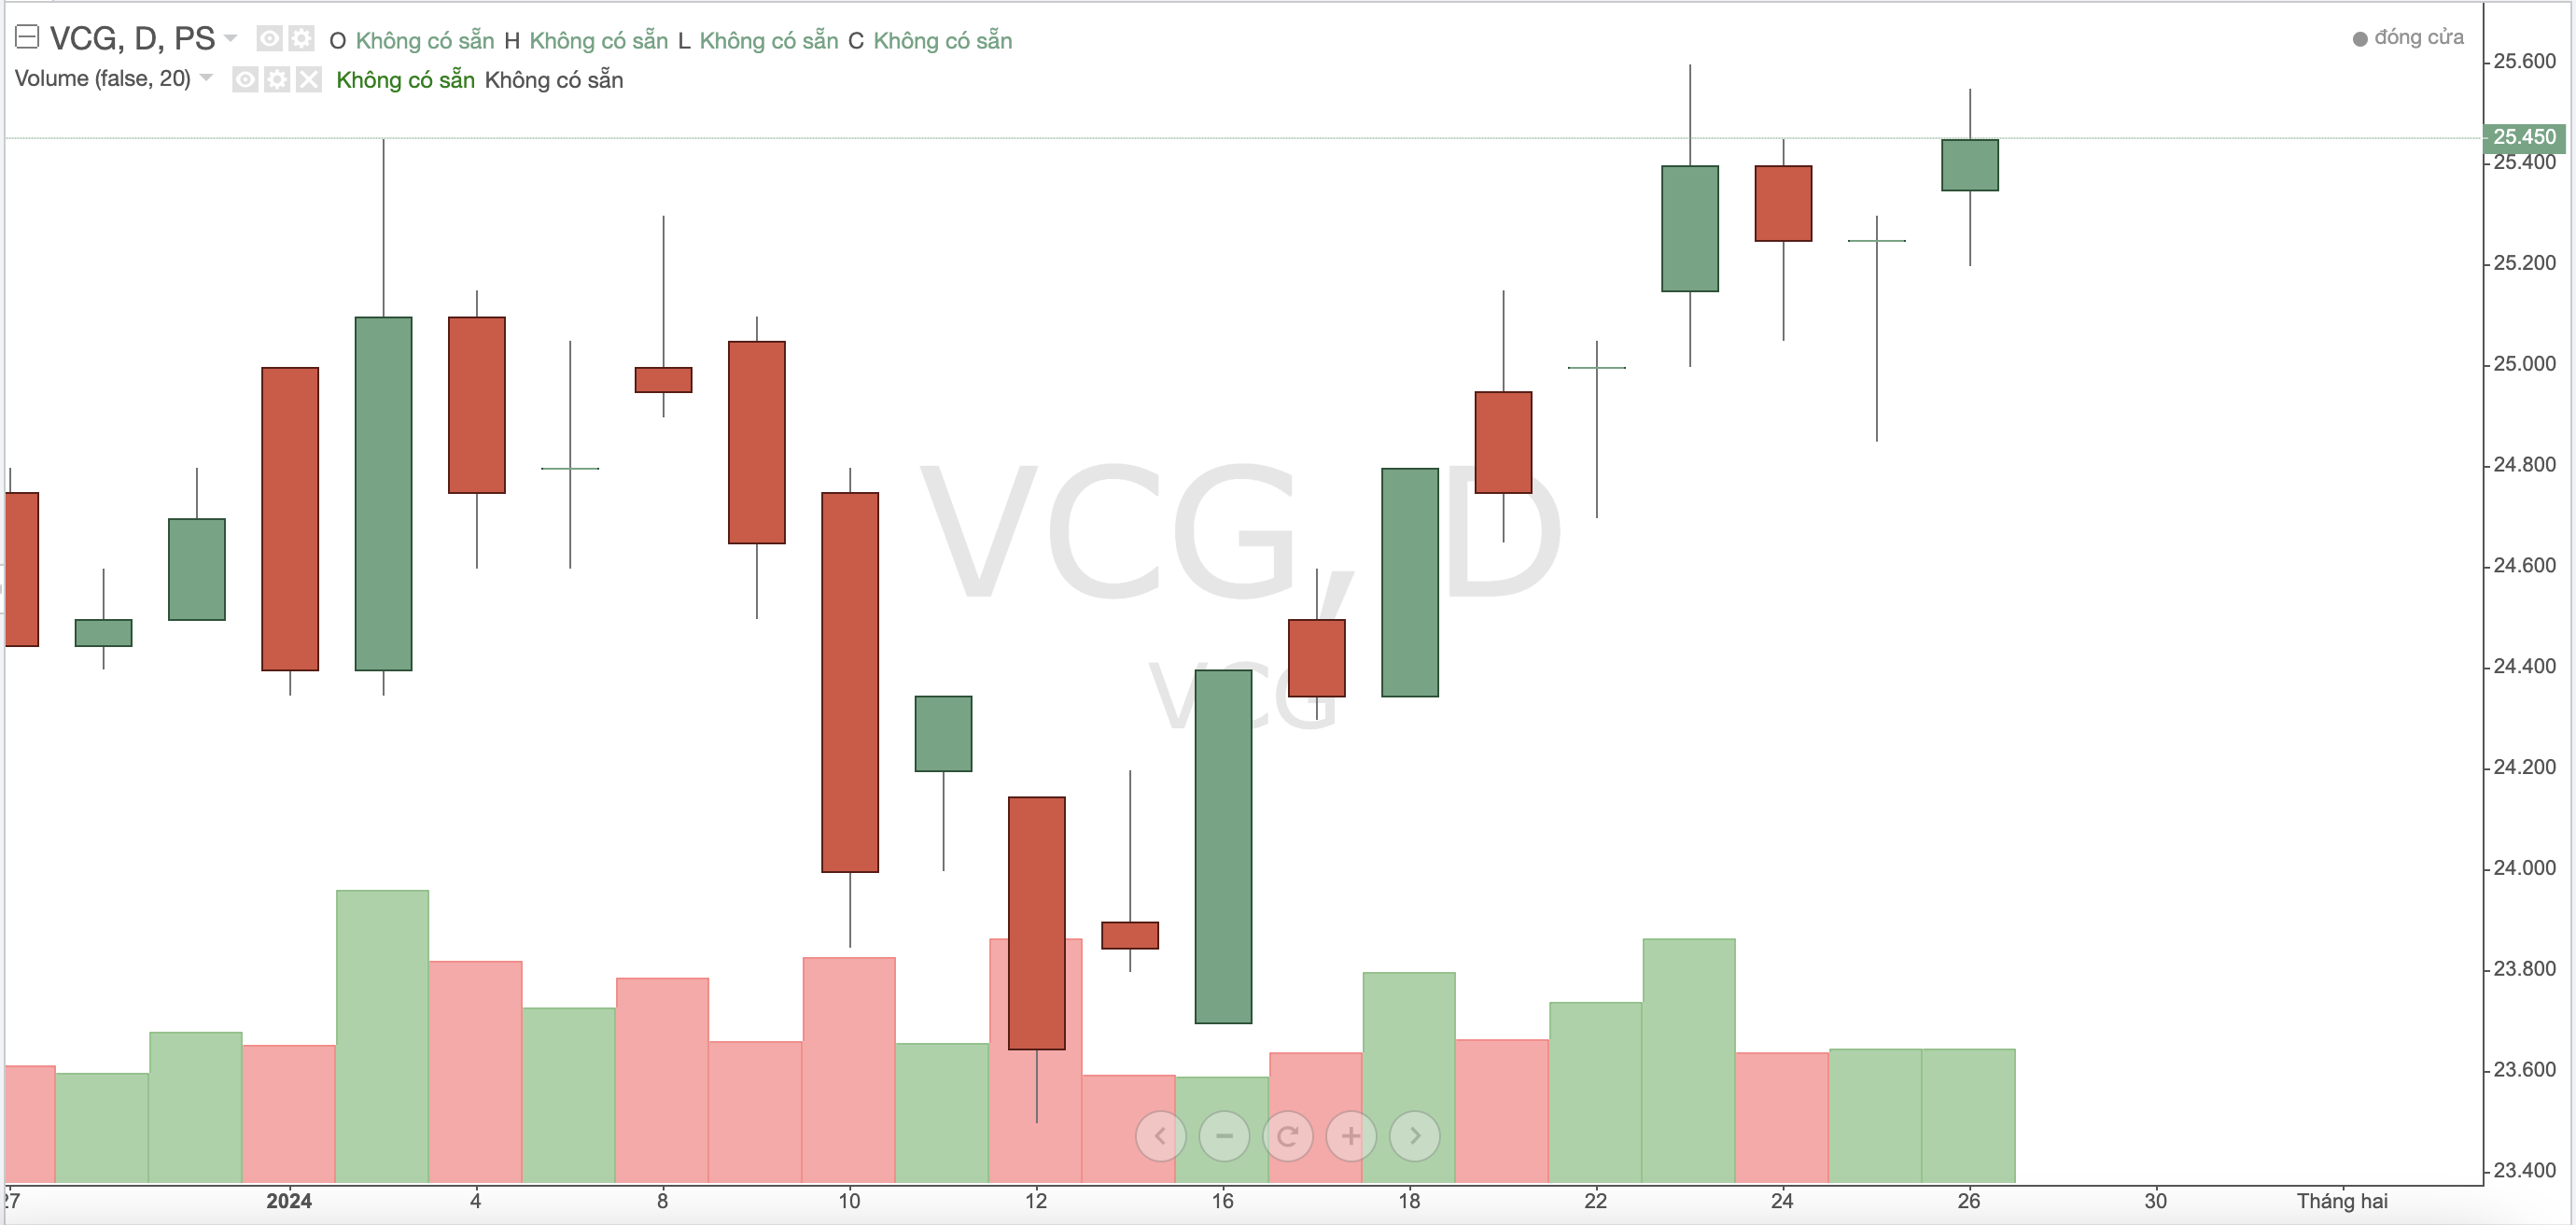 Dragon Capital mua hơn 14 triệu cổ phiếu VCG của Vinaconex, nâng sở hữu lên 7,7% vốn